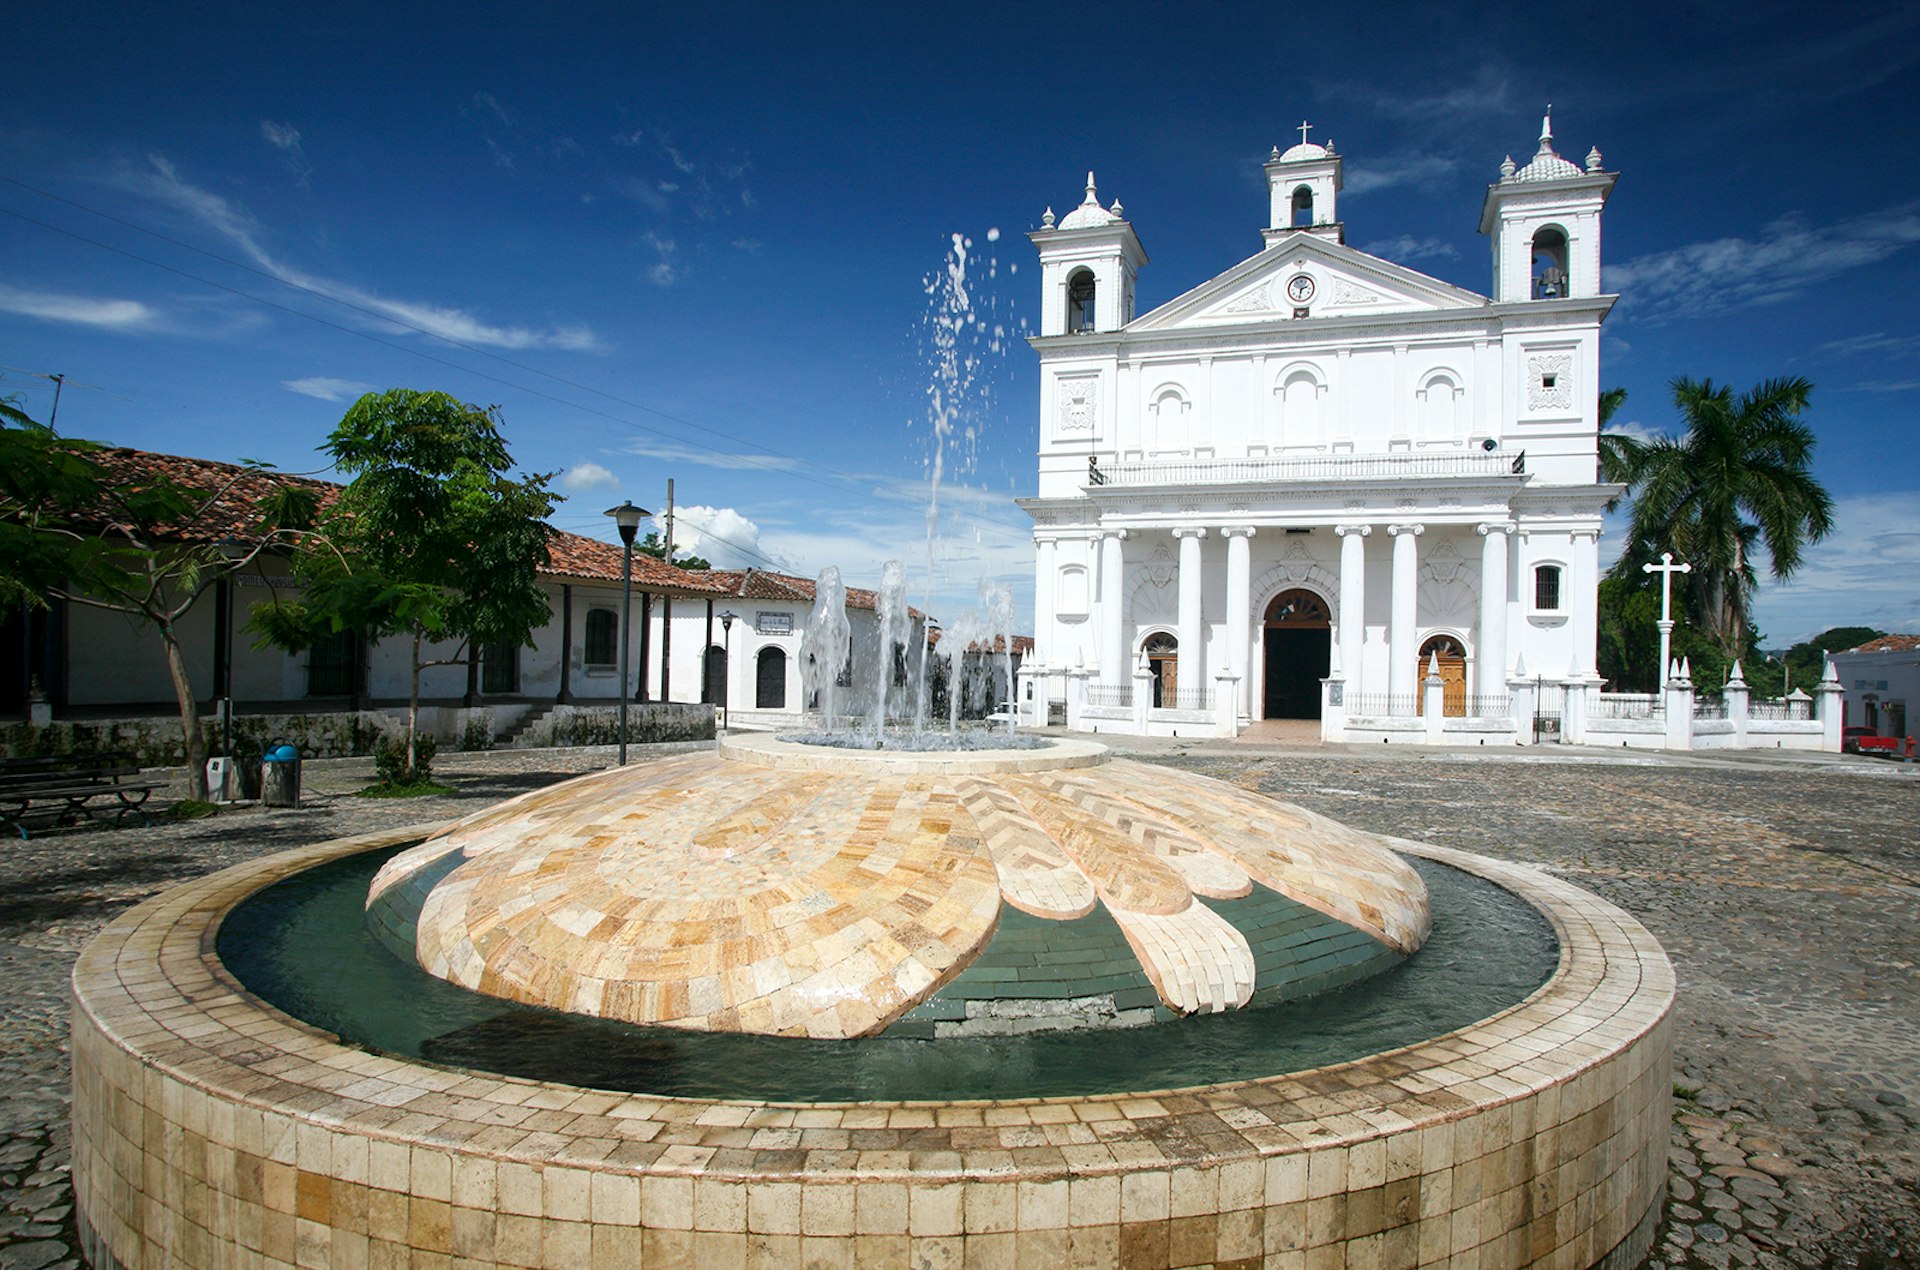 Features - Iglesia Santa Lucia as seen from Parque Centenario fountain.